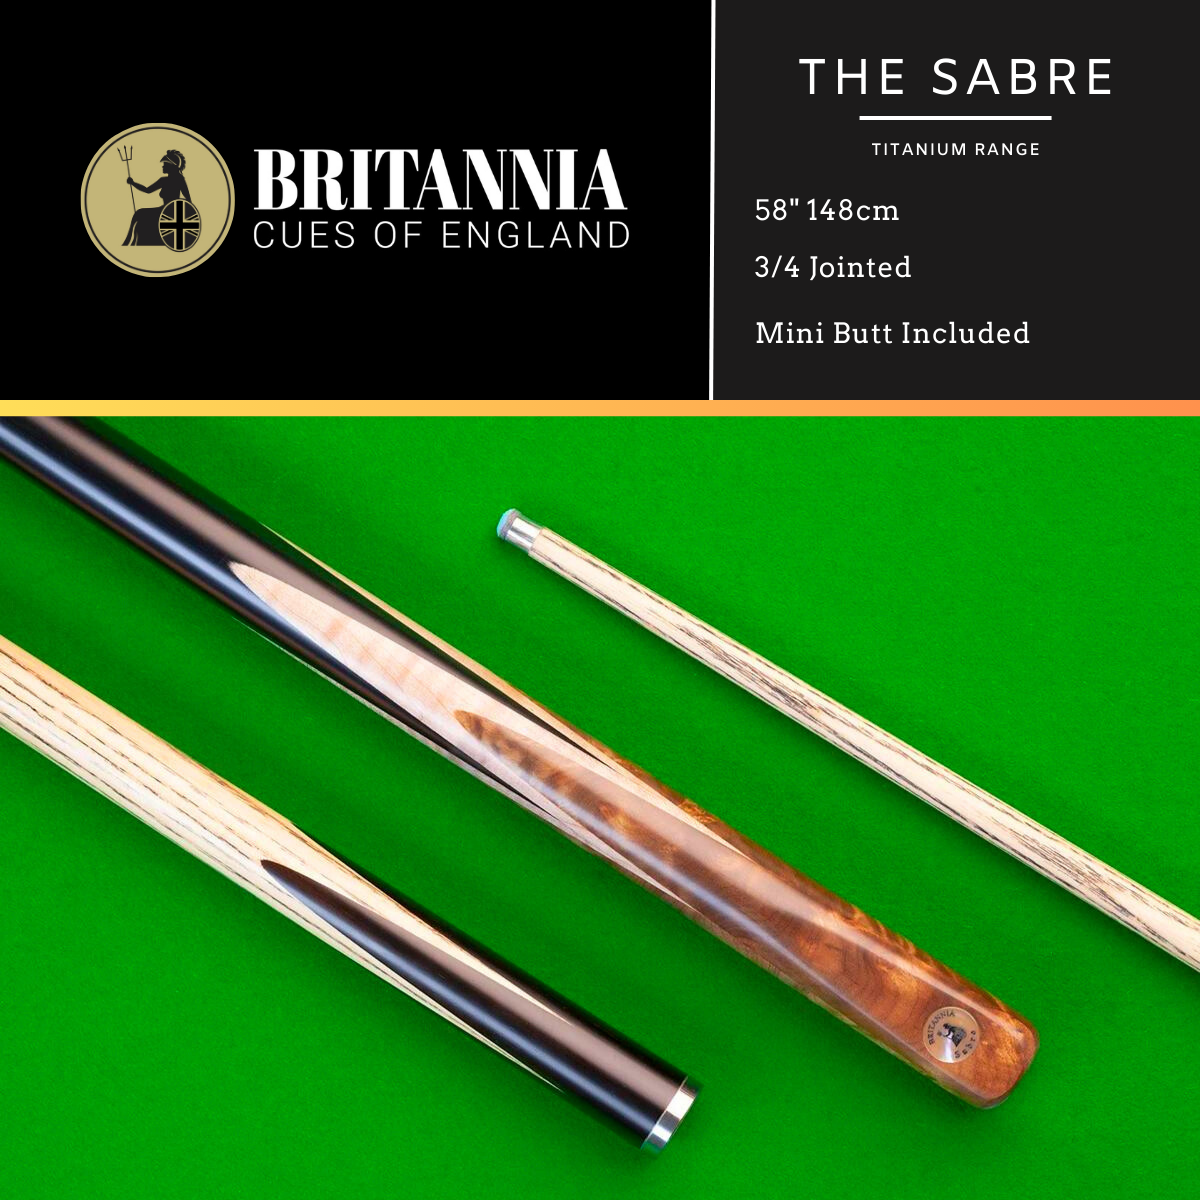 Britannia 3/4 Jointed Sabre Titanium Snooker Cue